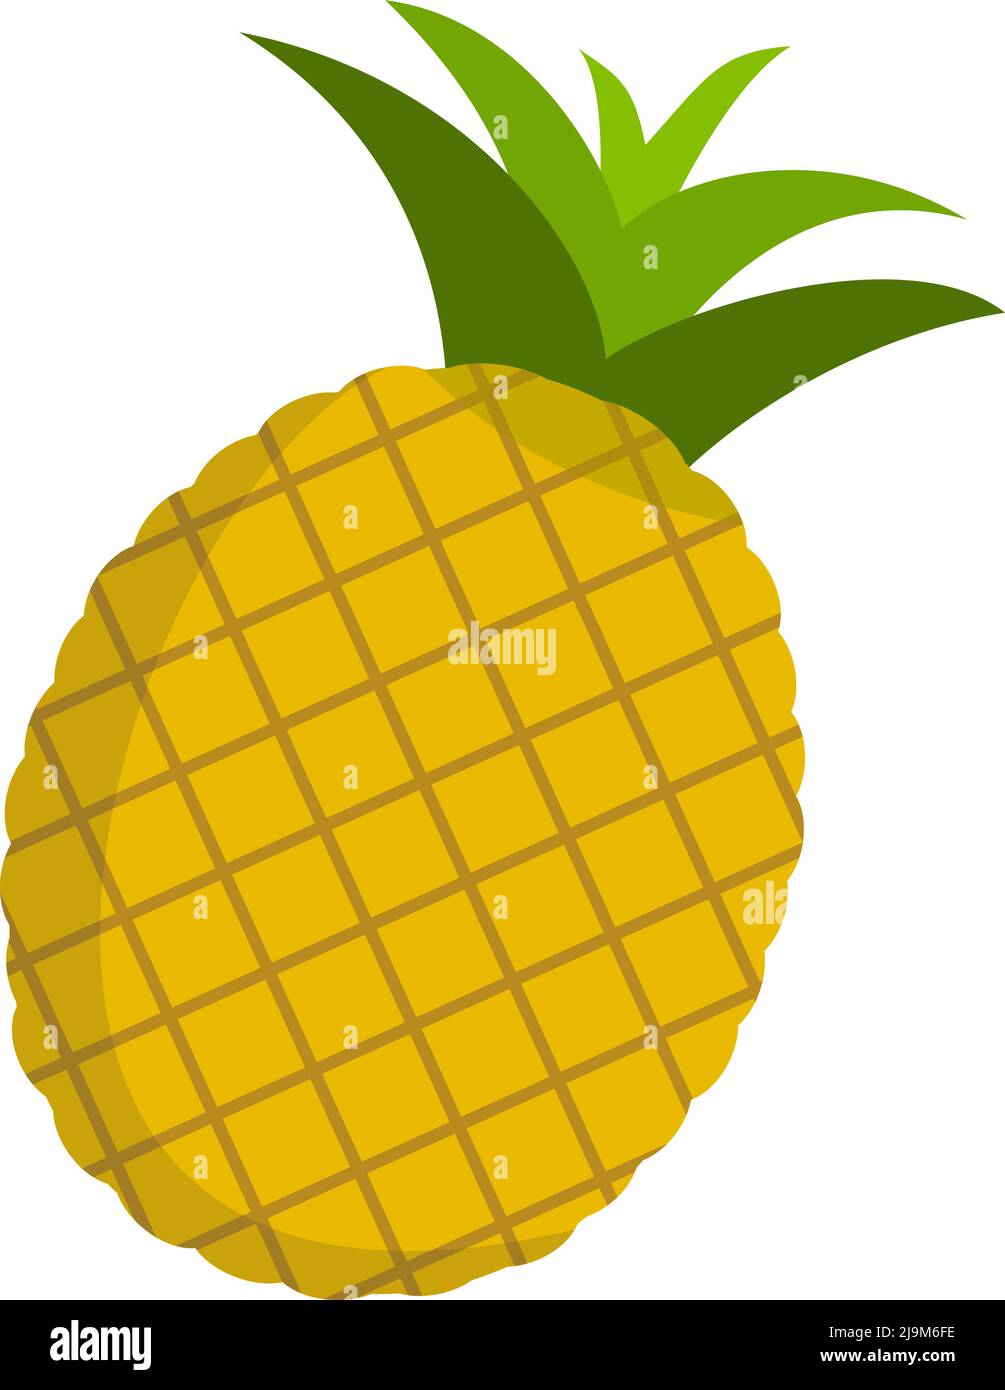 pomme de pin mûre fraîche isolée sur fond blanc, illustration vectorielle symbole ananas Illustration de Vecteur